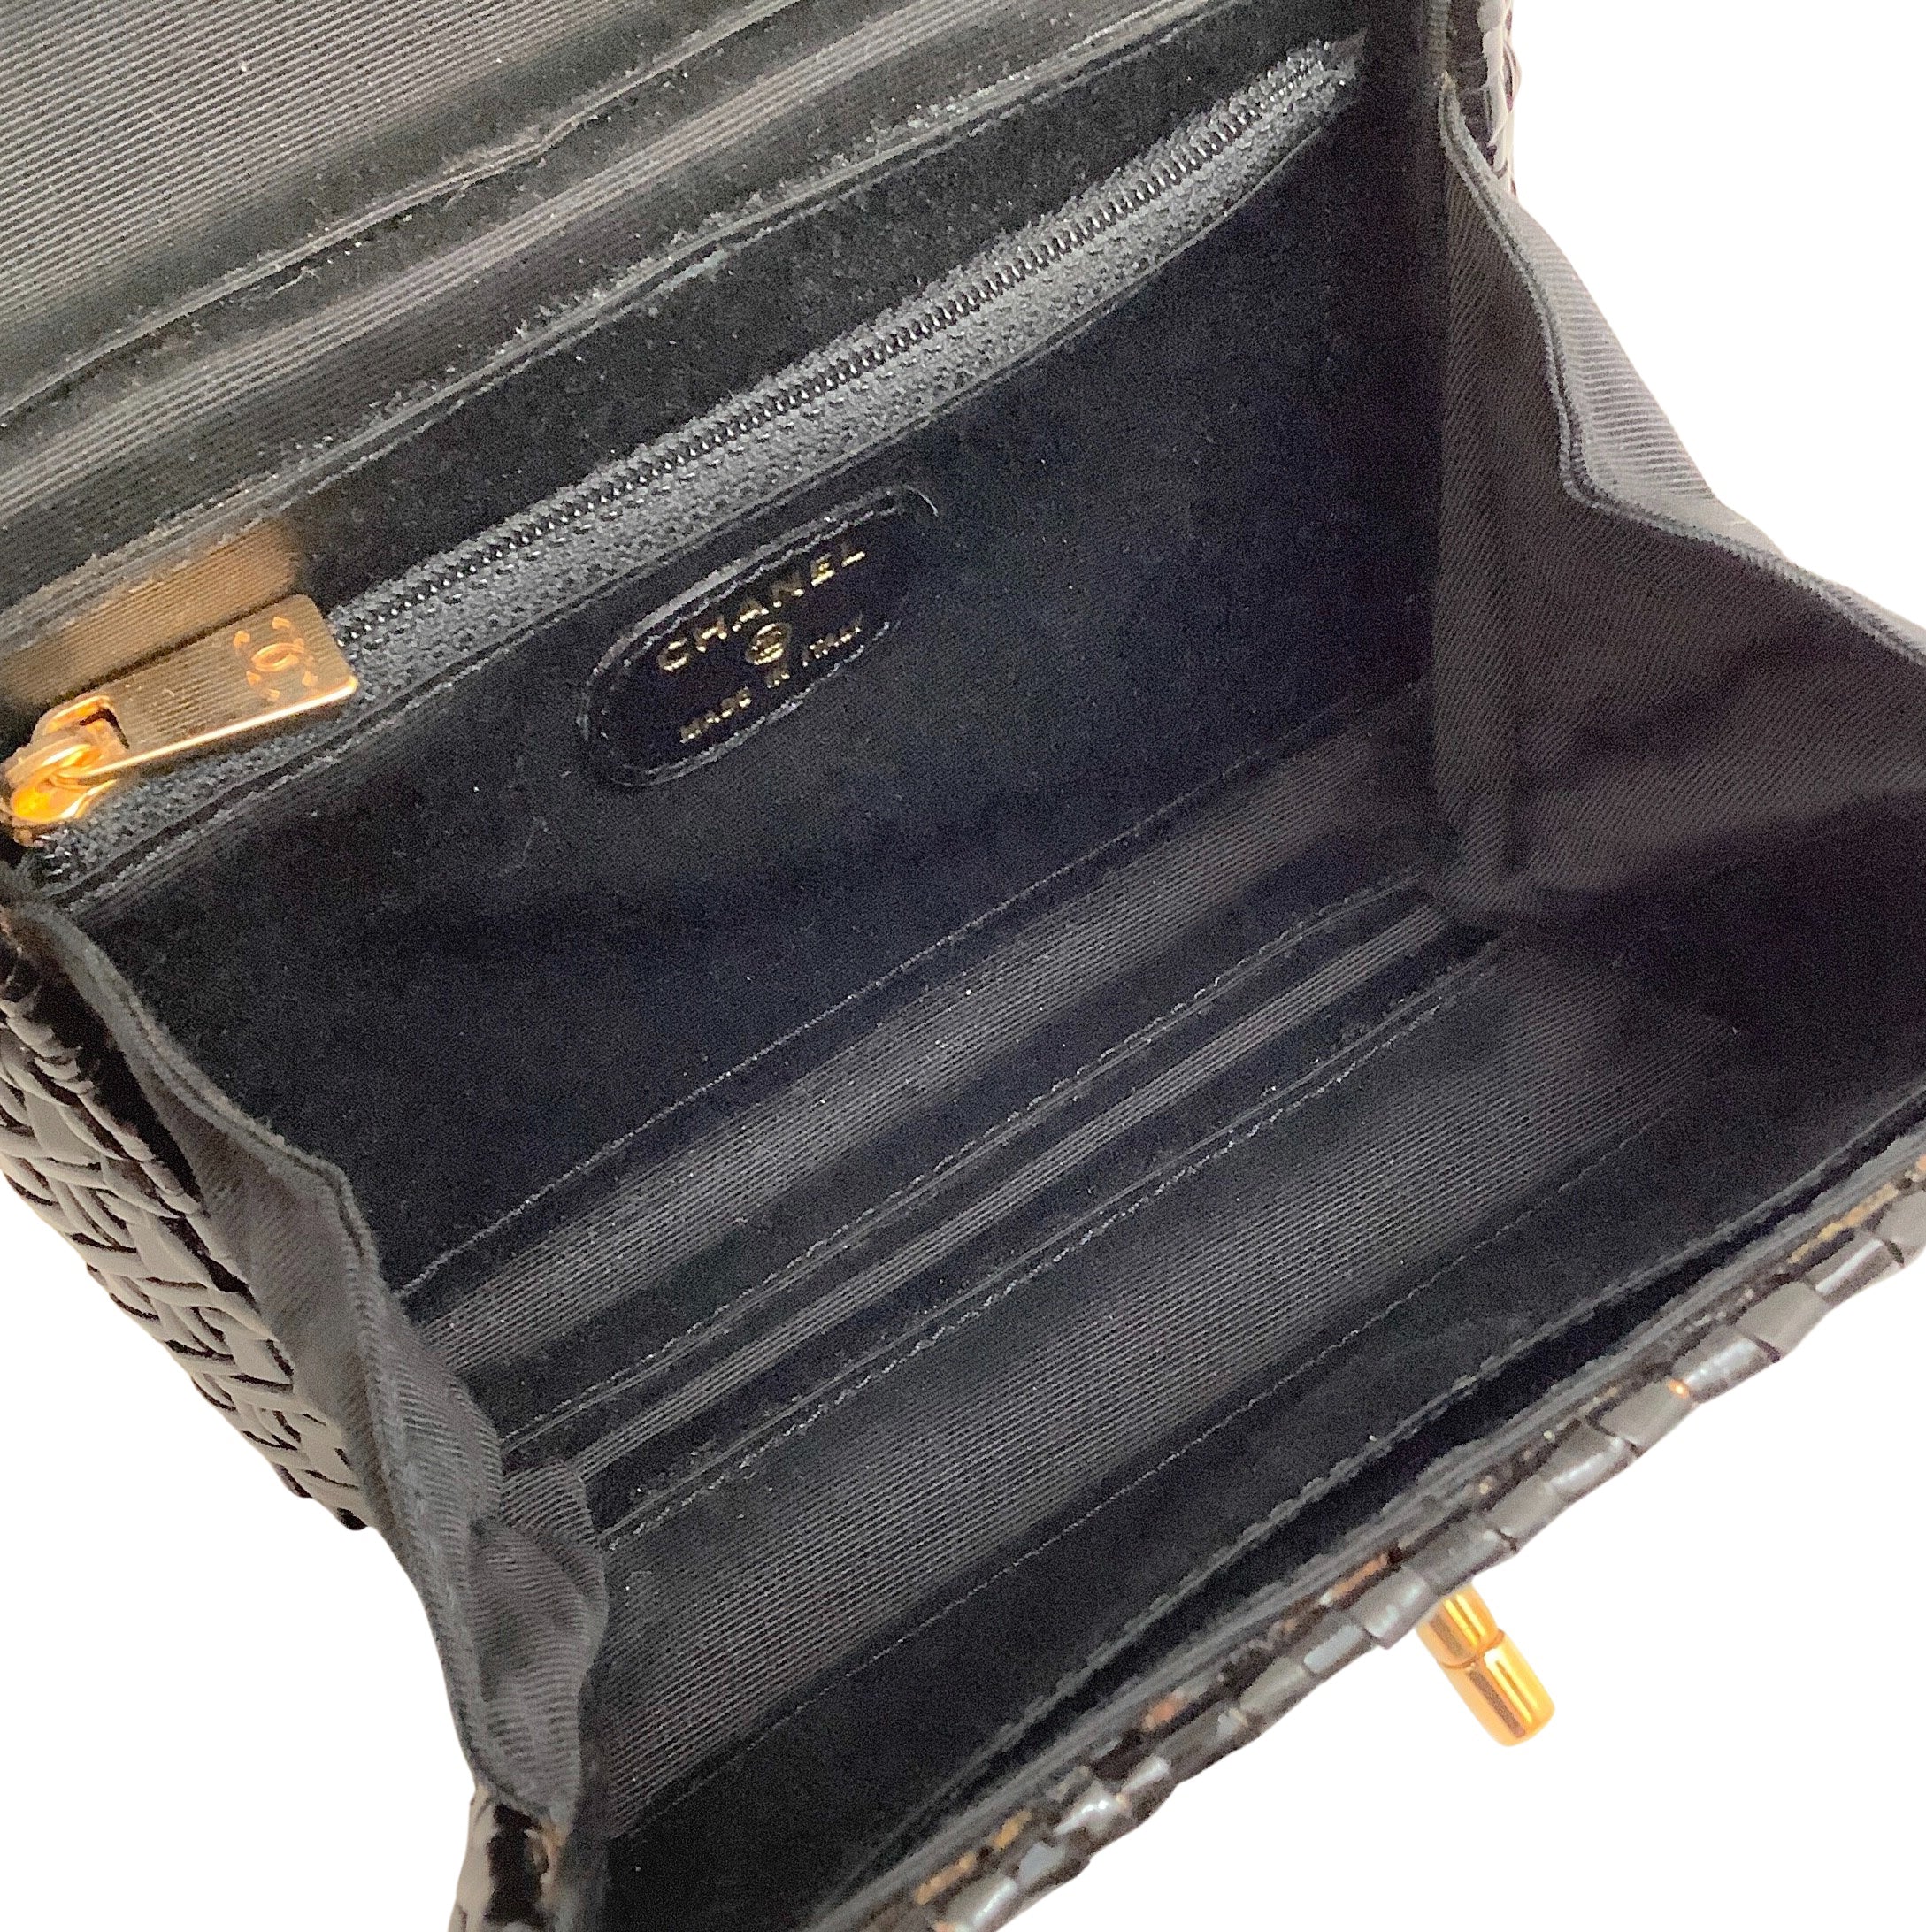 Chanel Vintage 1990's Black Mini Wicker 24K Hardware Shoulder Bag